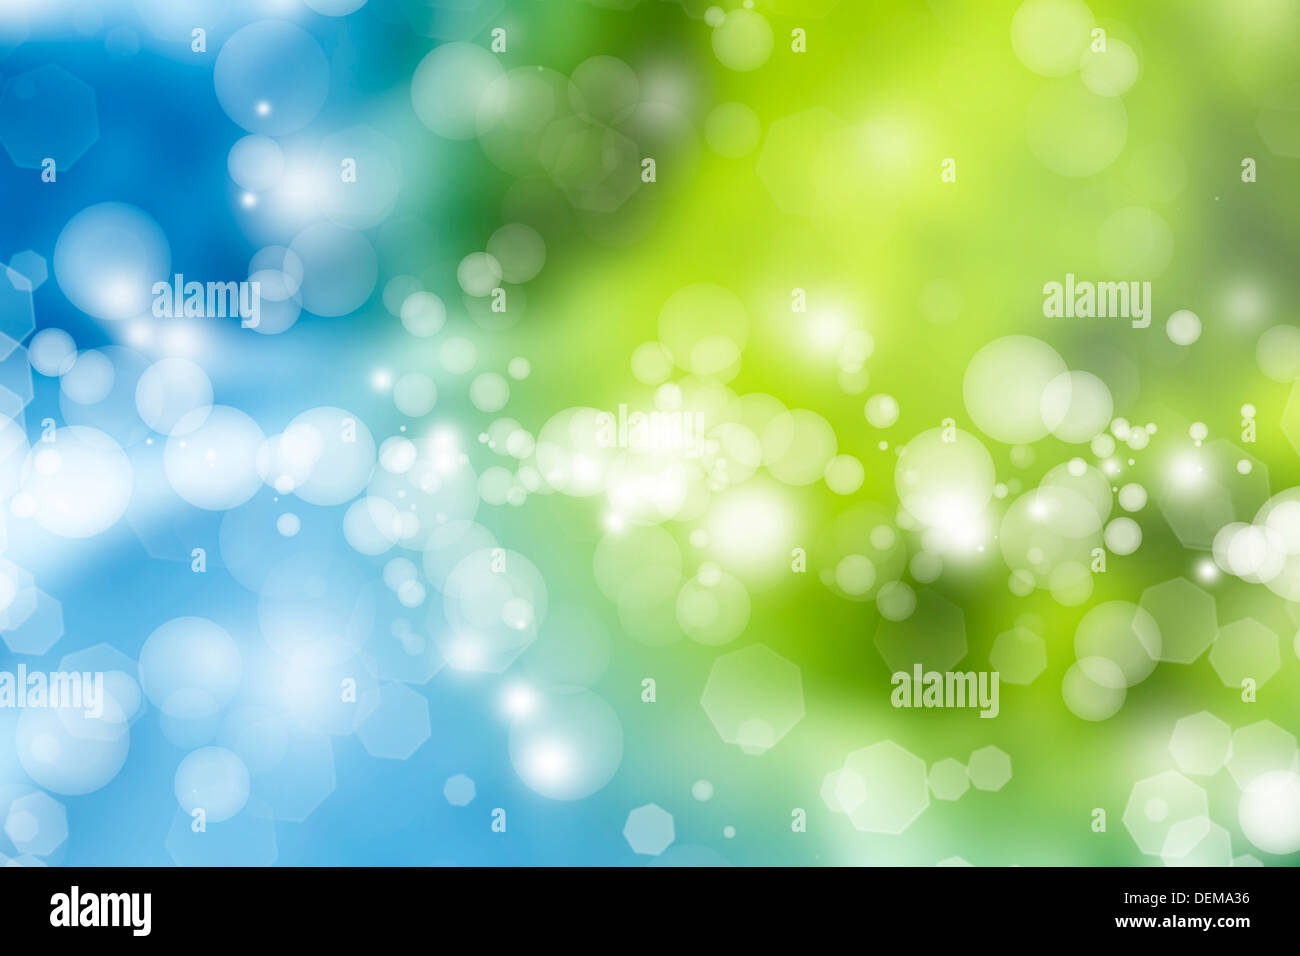 Kreise abstrakt blau grün Hintergrund Stockfoto